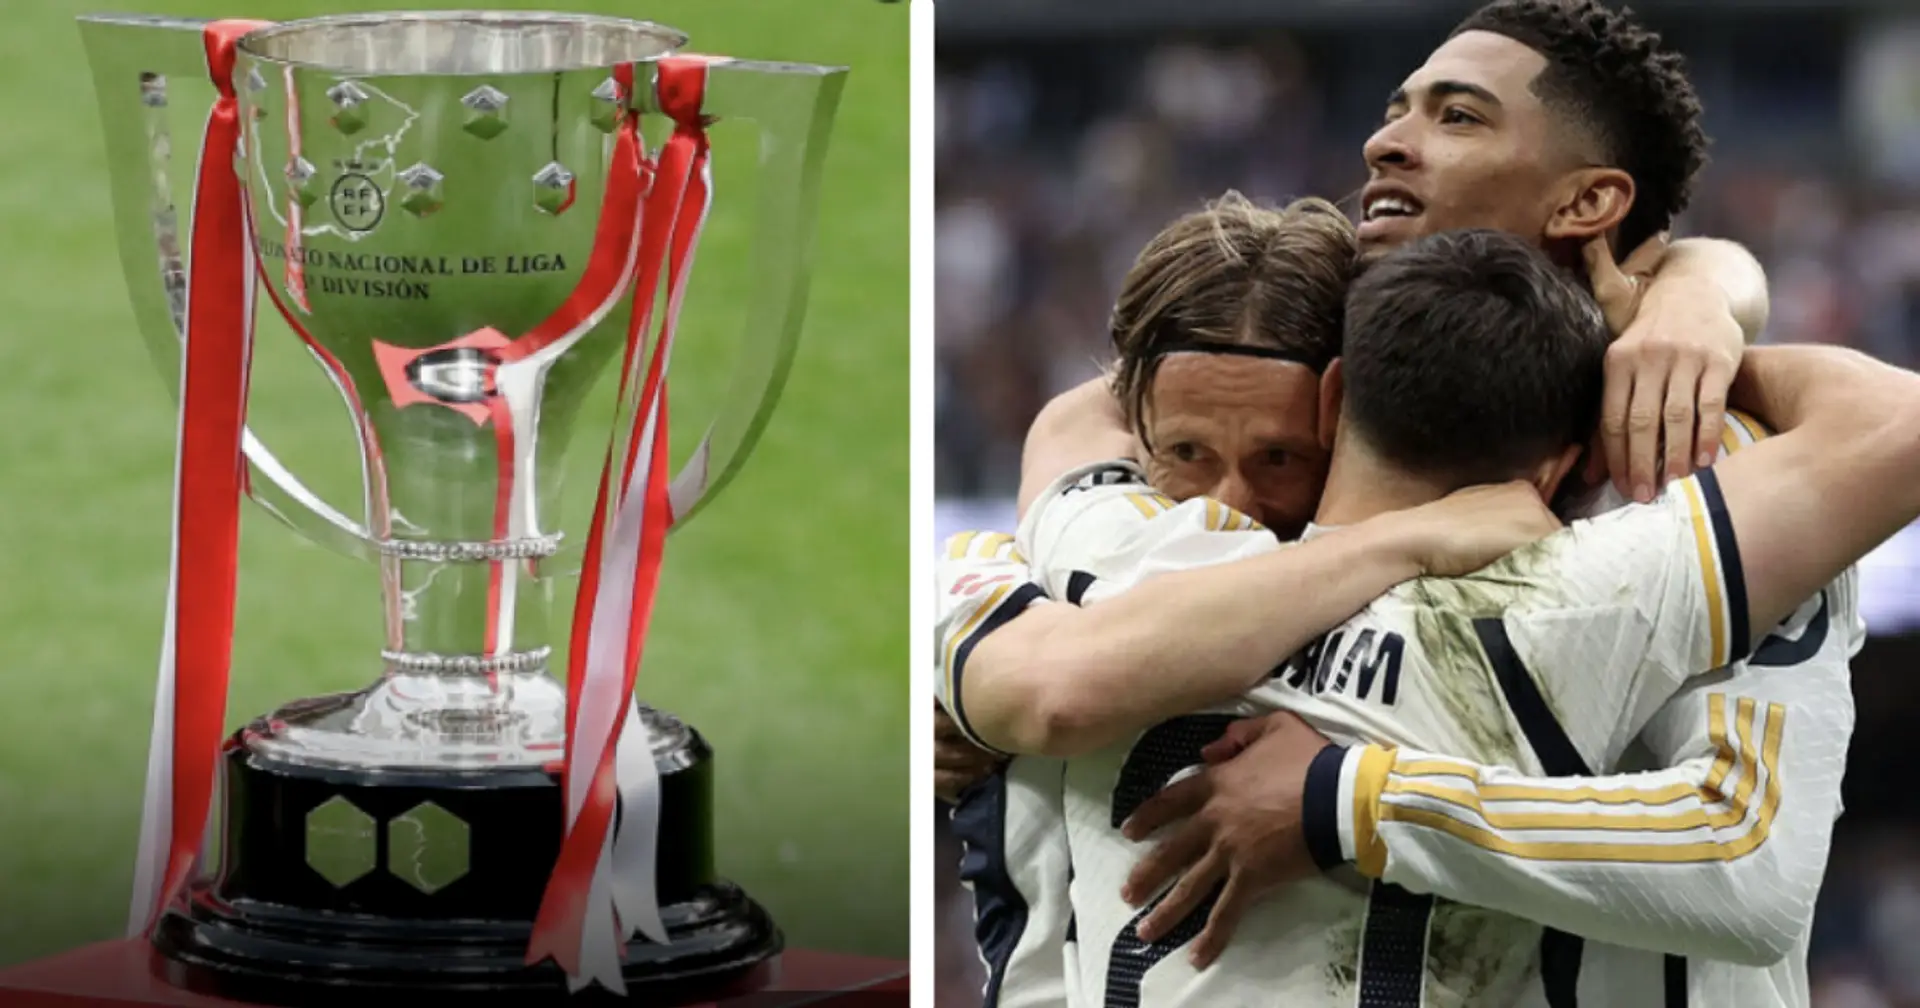 Quelle est la différence de nombre de titres de La Liga remportés entre le Real Madrid et Barcelone ?